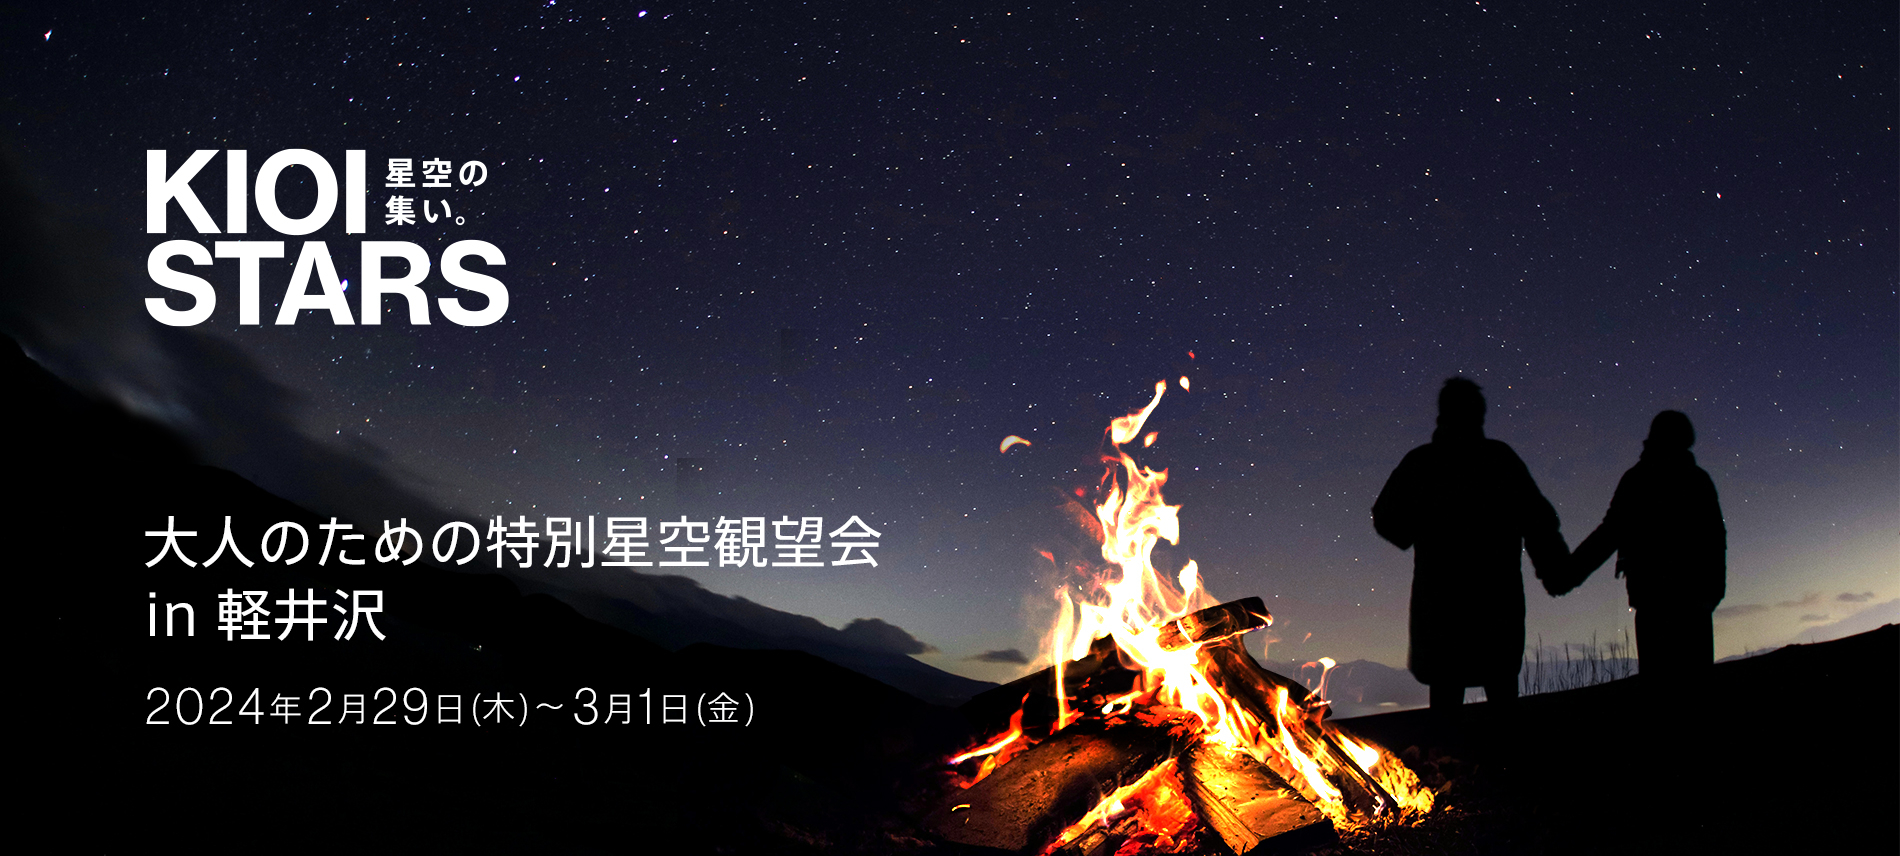 東京ガーデンテラス紀尾井町presents「KIOI STARS 星空の集い。大人のための特別星空観望会in軽井沢